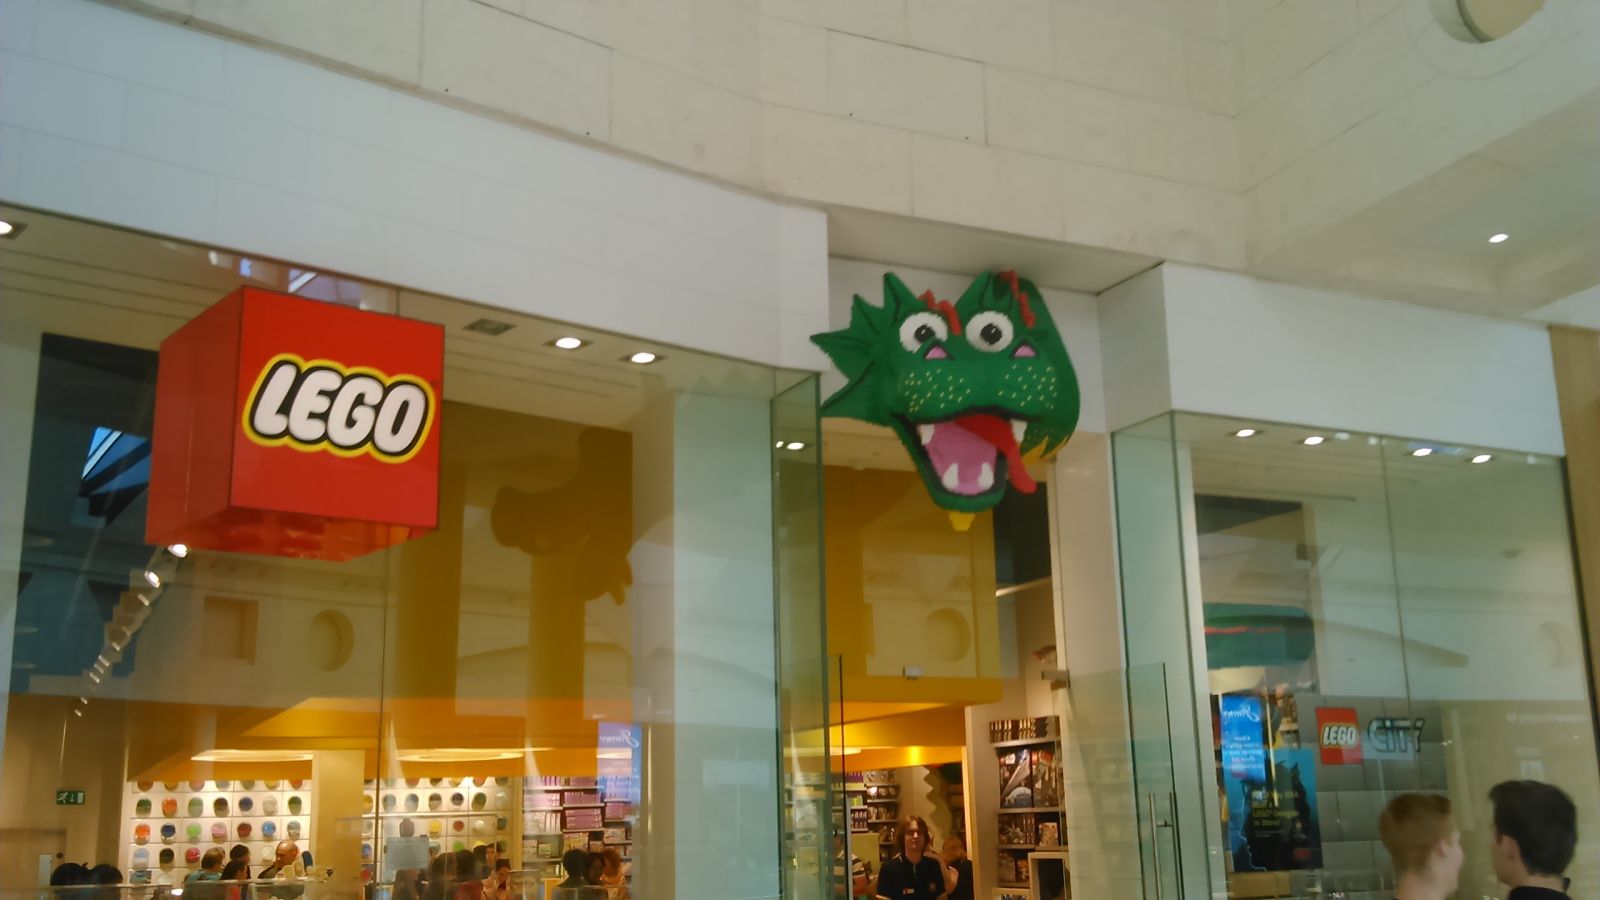 LEGO Store 2